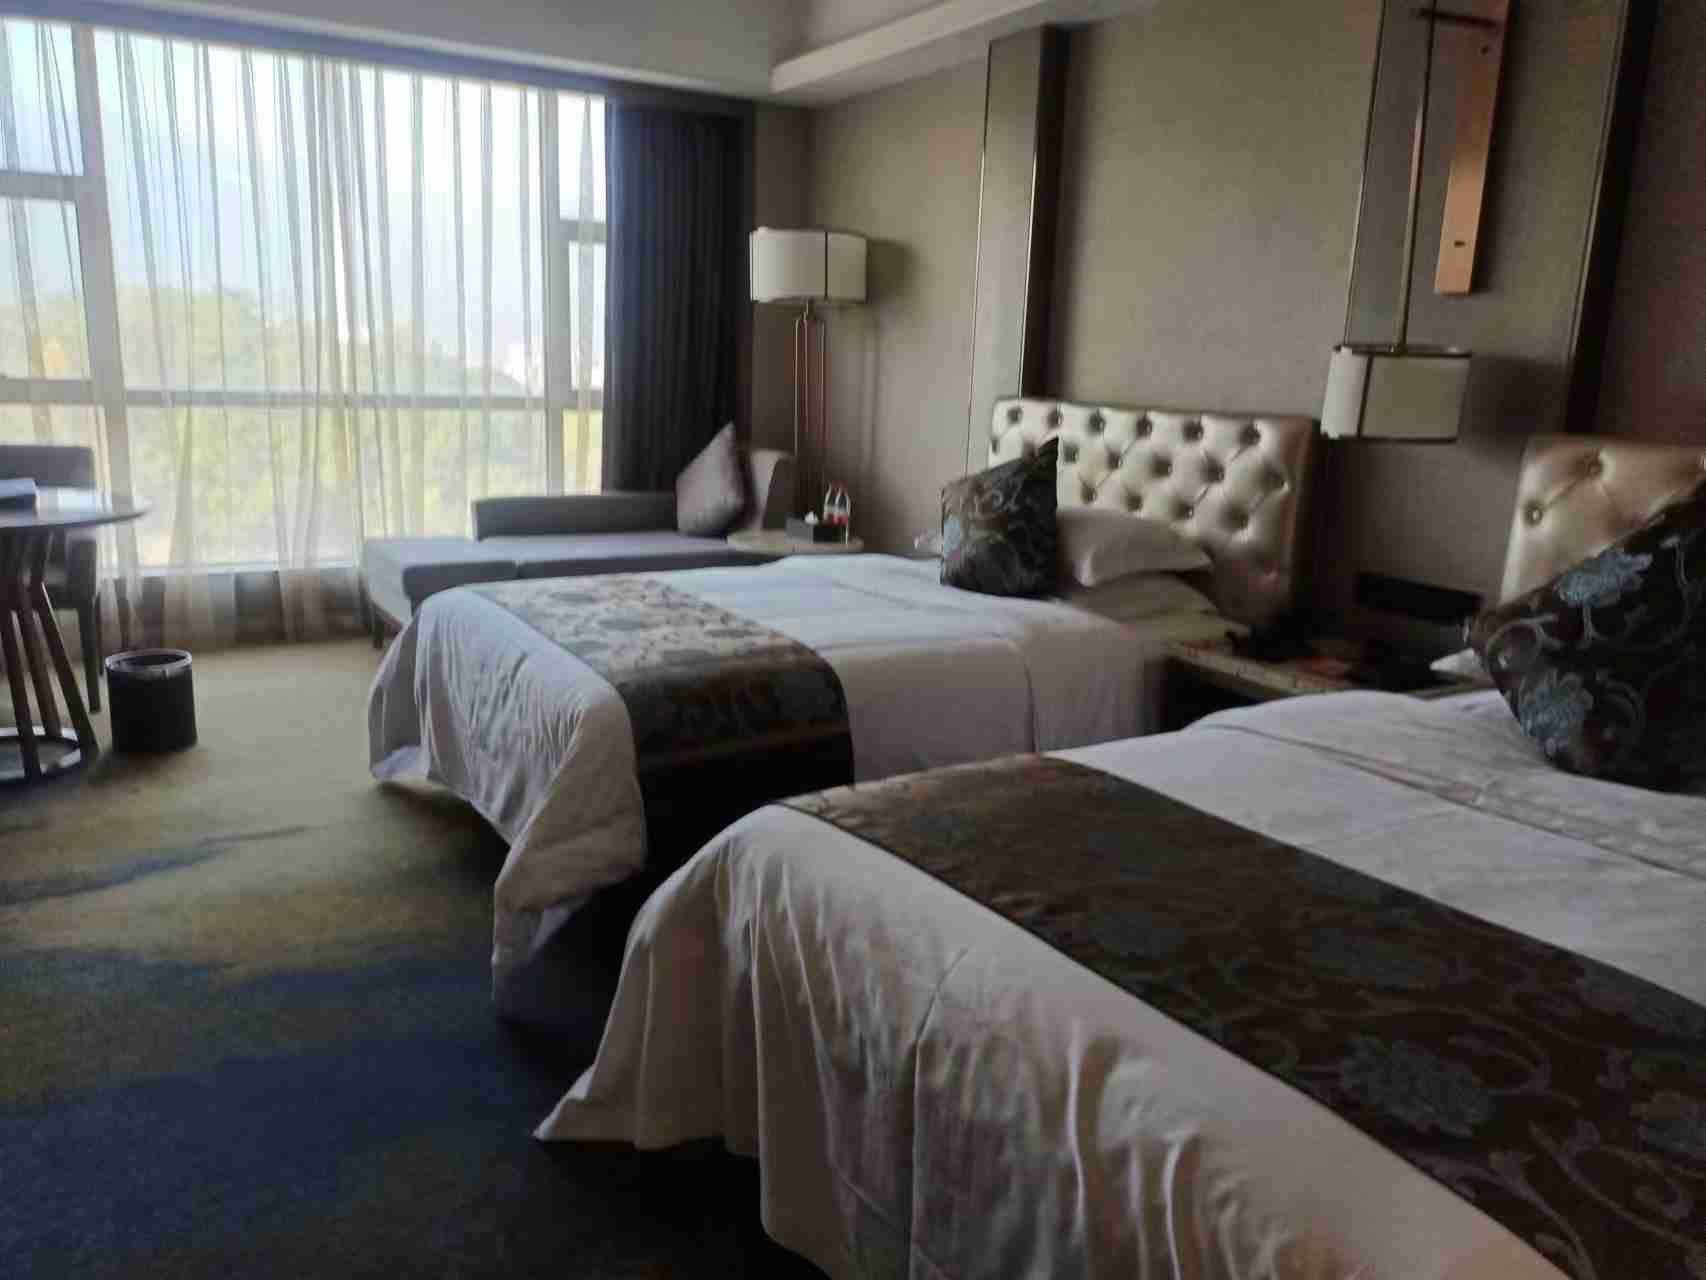 住过茶陵好几家同等价位的酒店，天伦酒店的房间是最舒适的，酒店硬件设施齐全、卫生干净整洁。